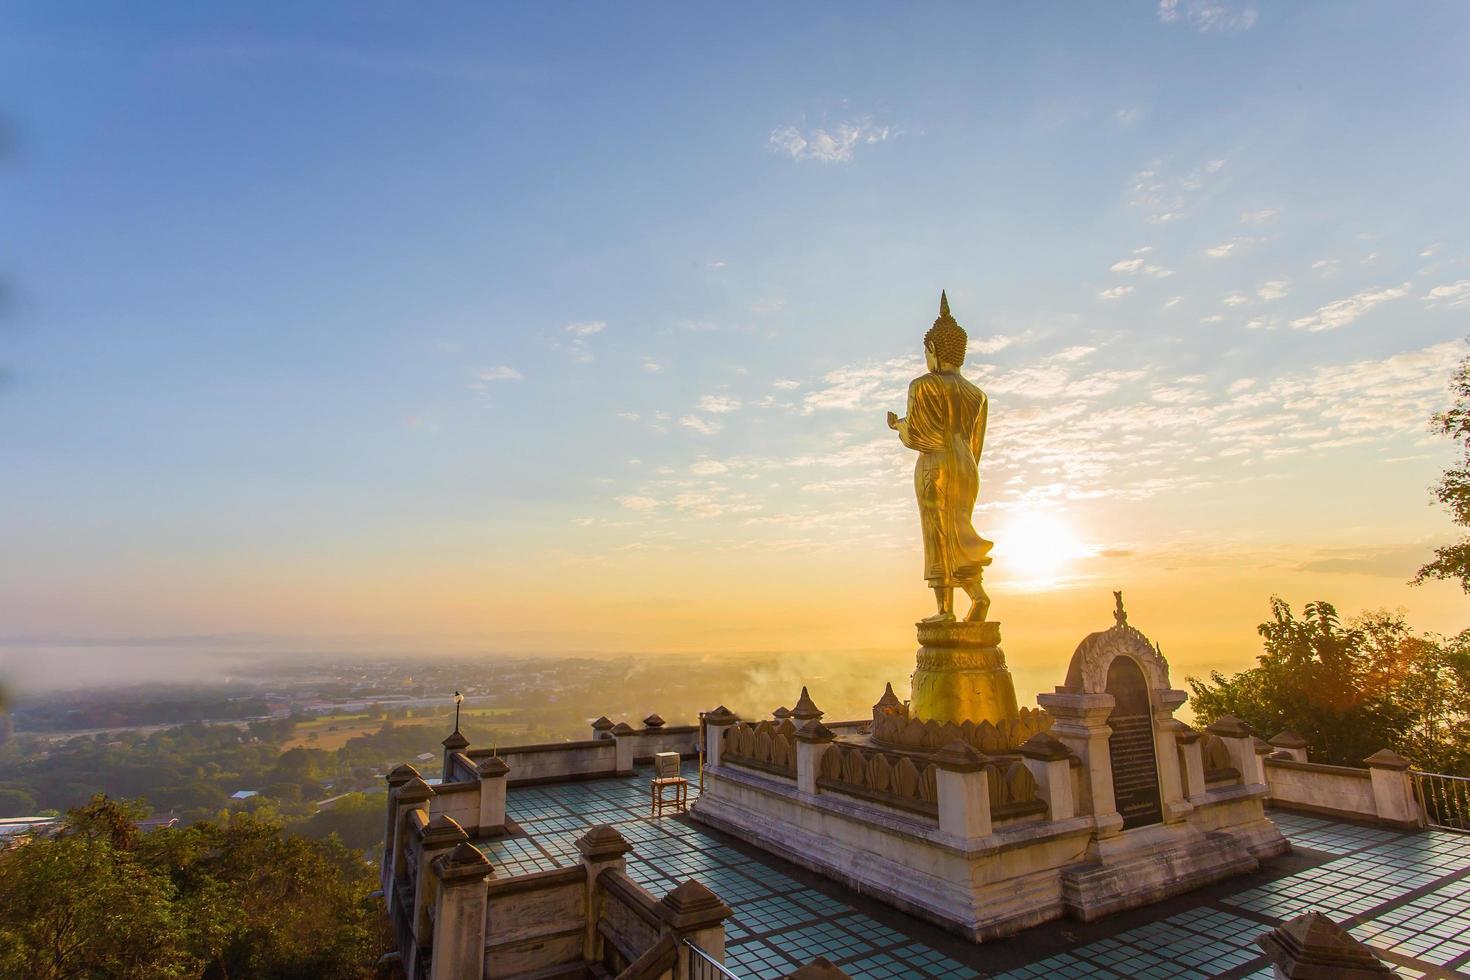 estátua de buda dourada dentro de phra esse templo khao noi o templo está localizado na colina de manhã com sol e céu brilhante, é uma grande atração turística de nan, tailândia. foto